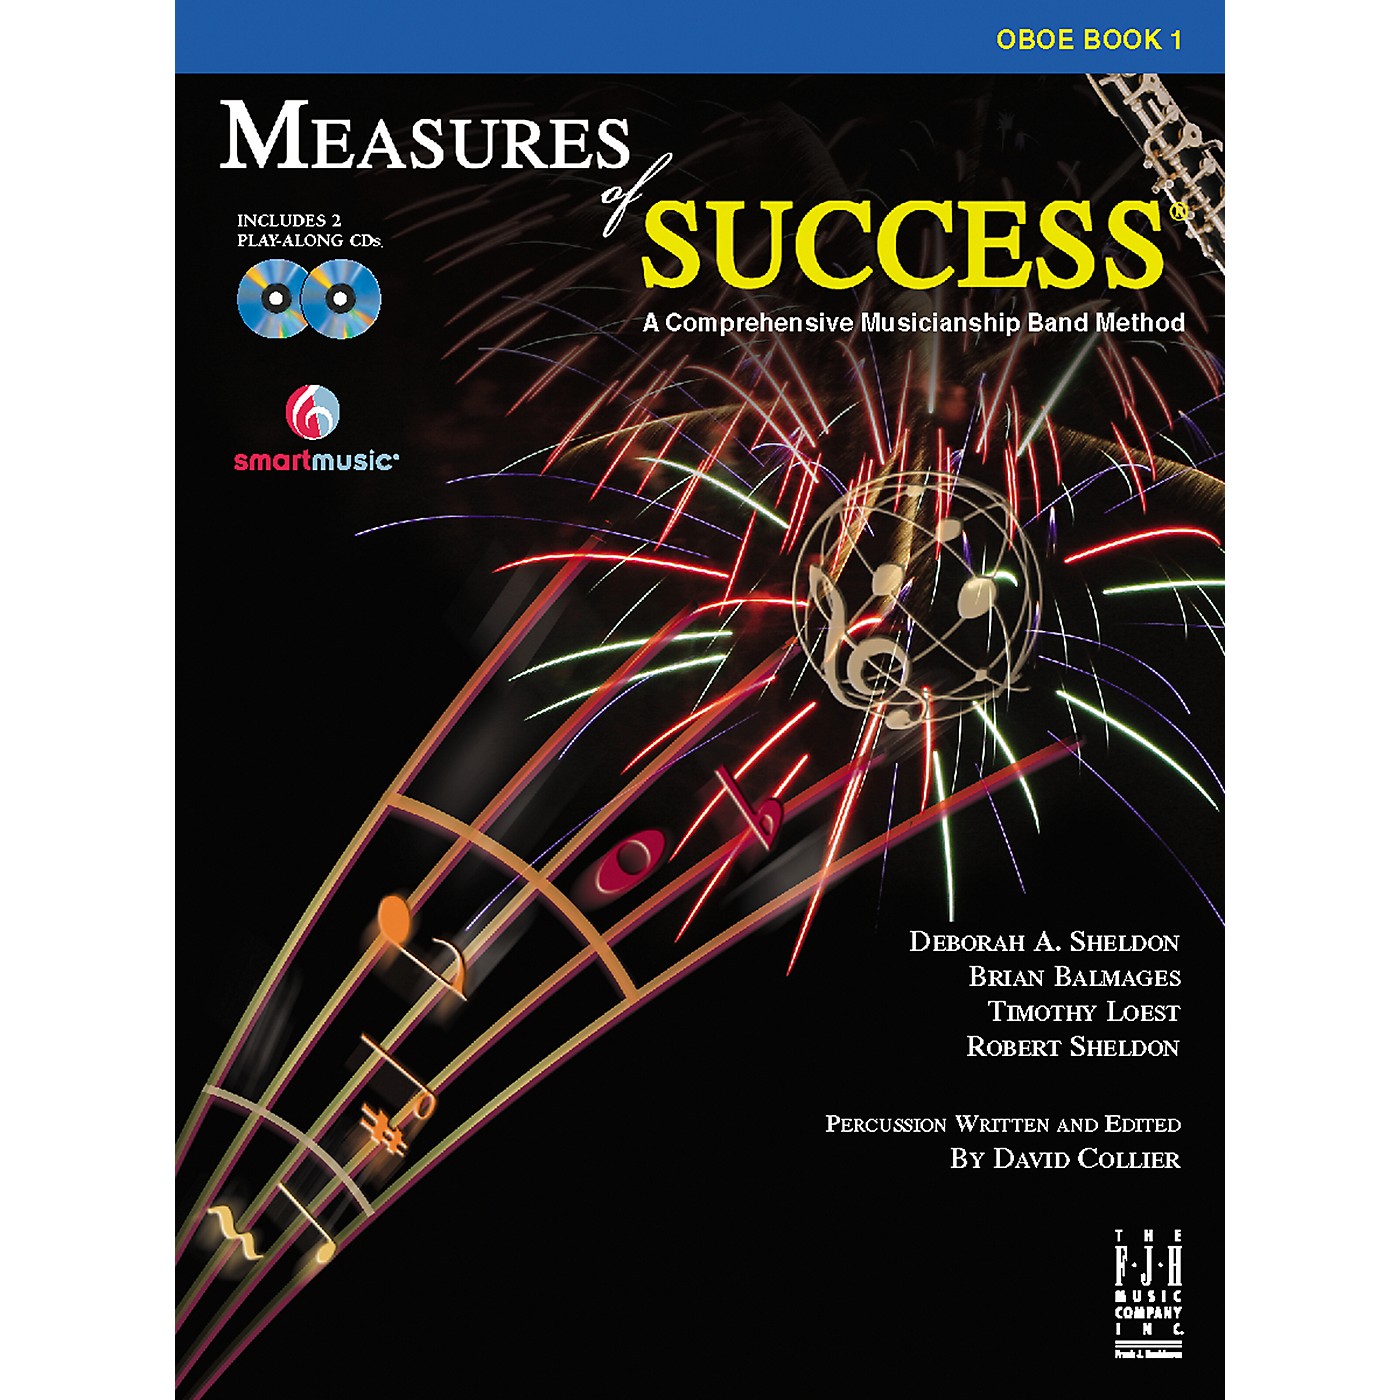 FJH Music Measures of Success Oboe Book 1 thumbnail